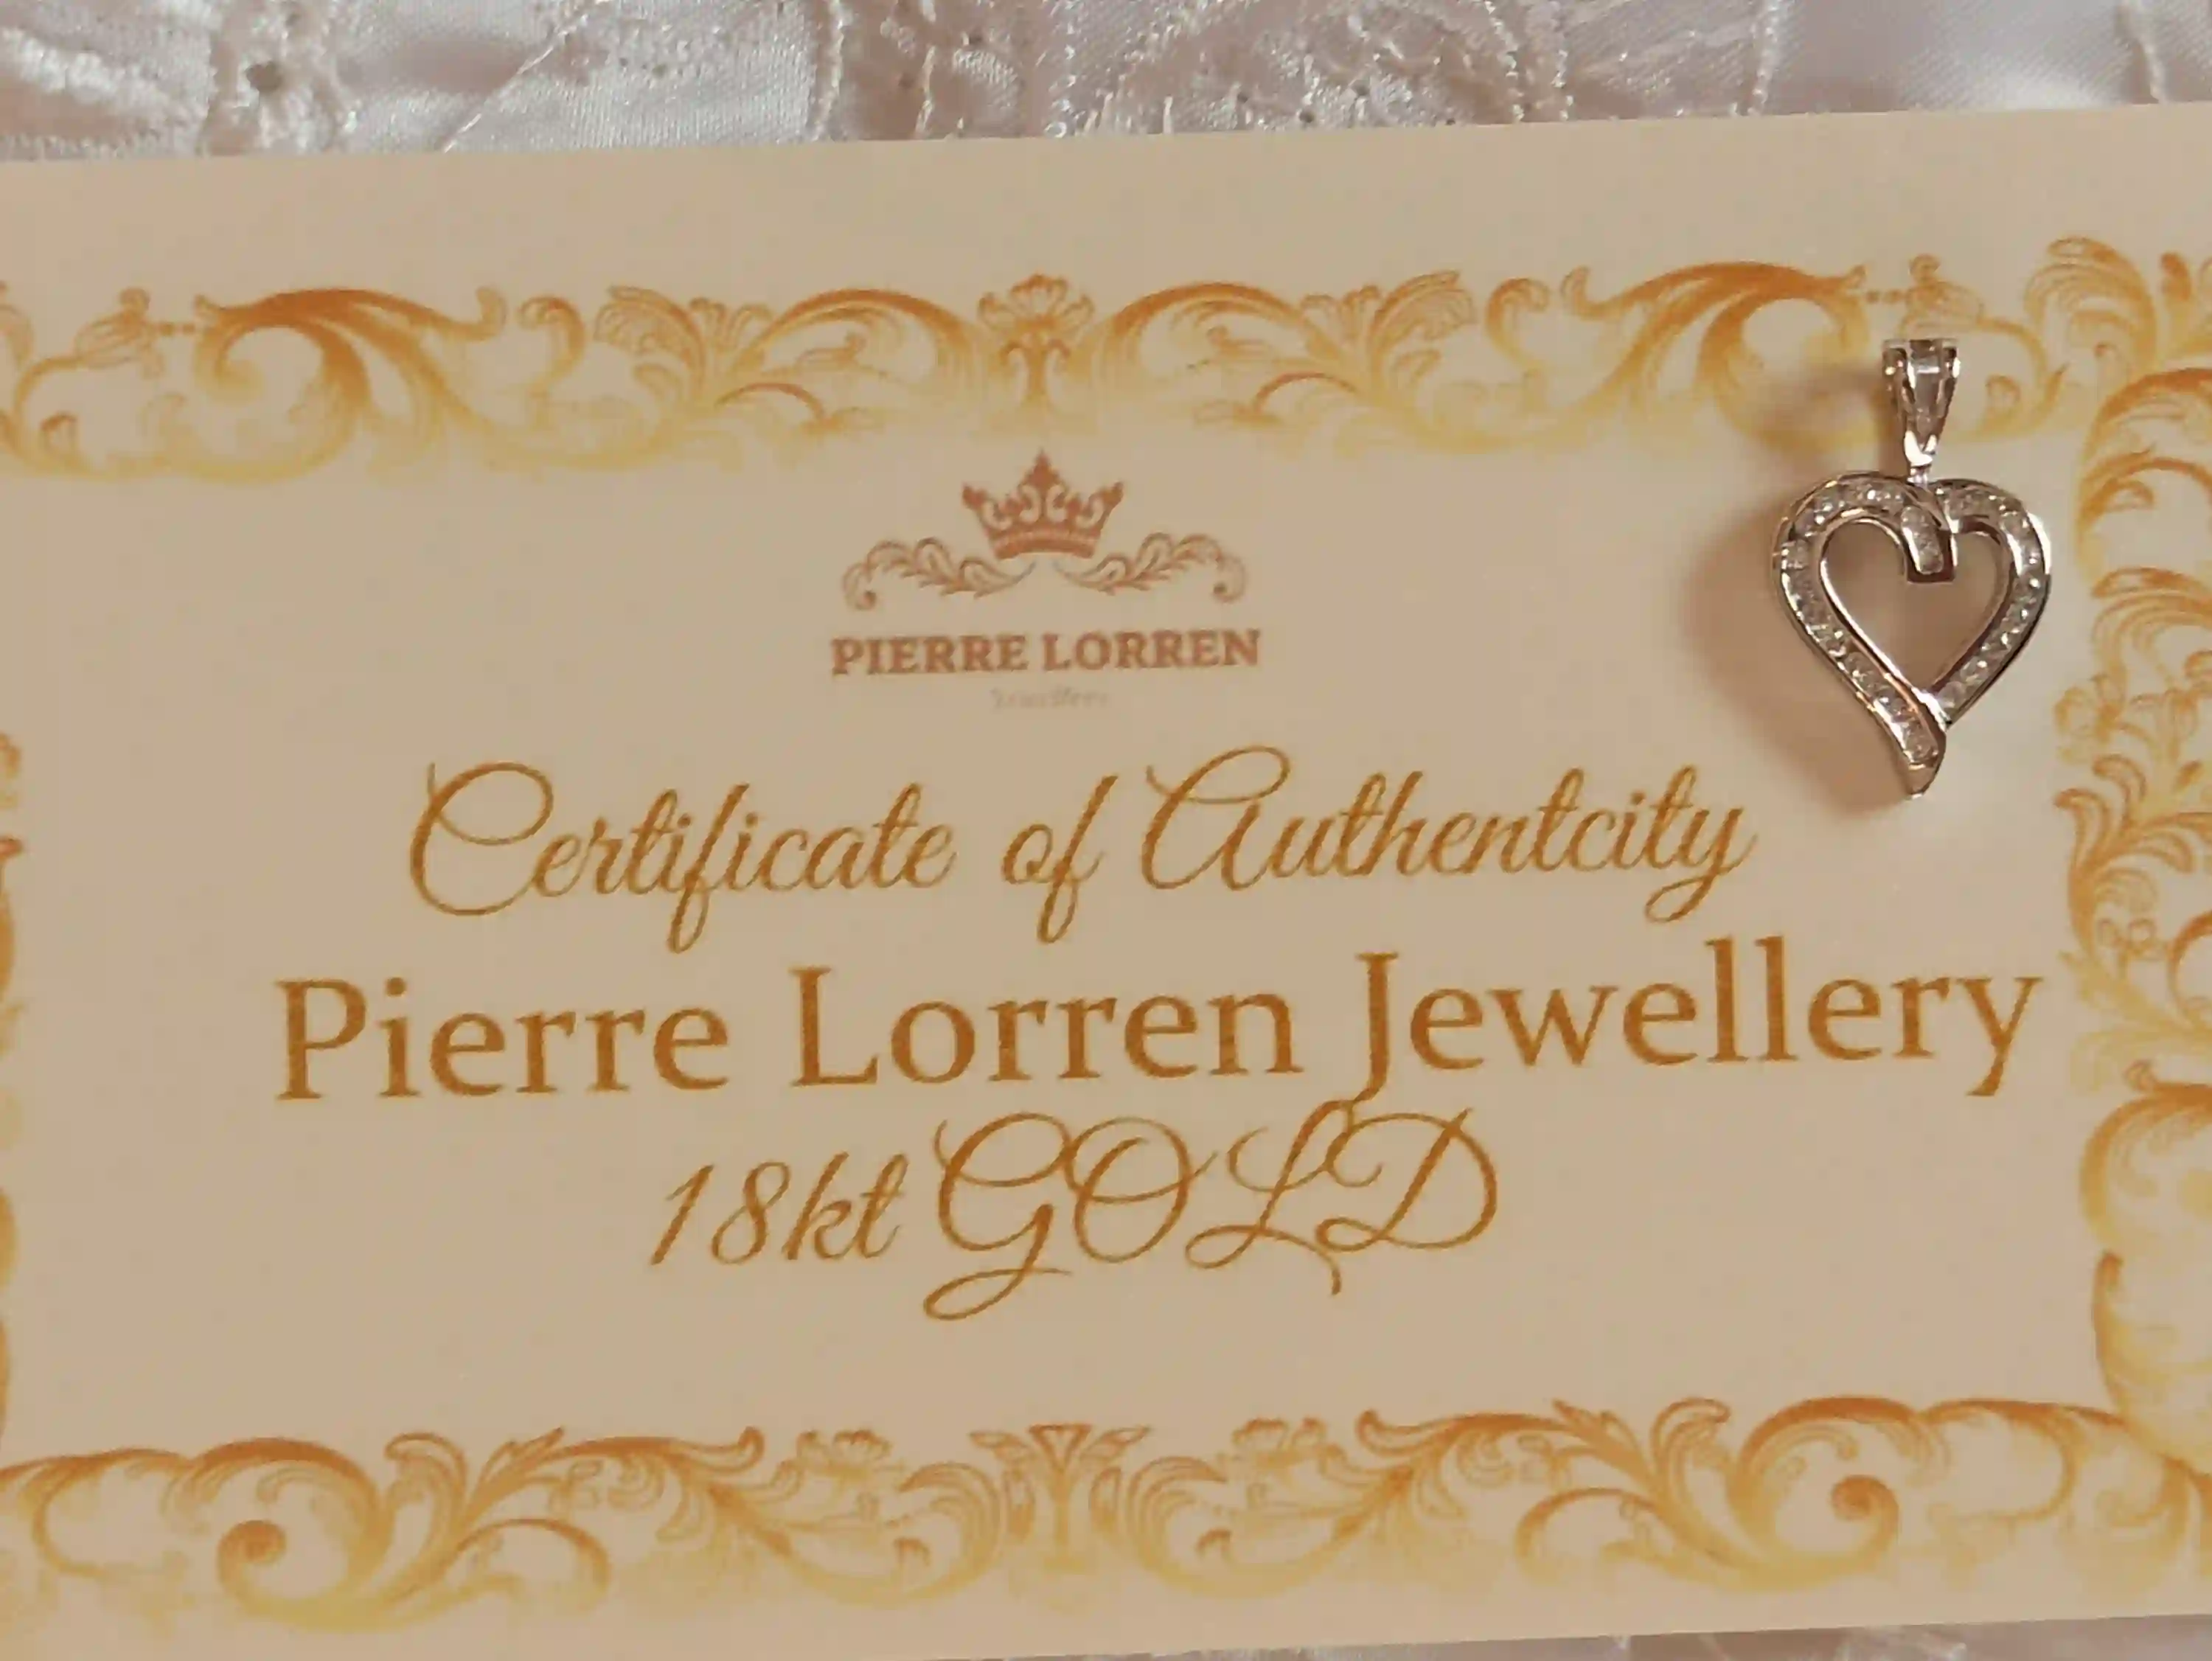 Heart DIAMOND pendant 18k Gold/Solid 18K White Gold HEART pendant GENUINE diamond gift/Heart pendent charm gift for women Only two Handmade 